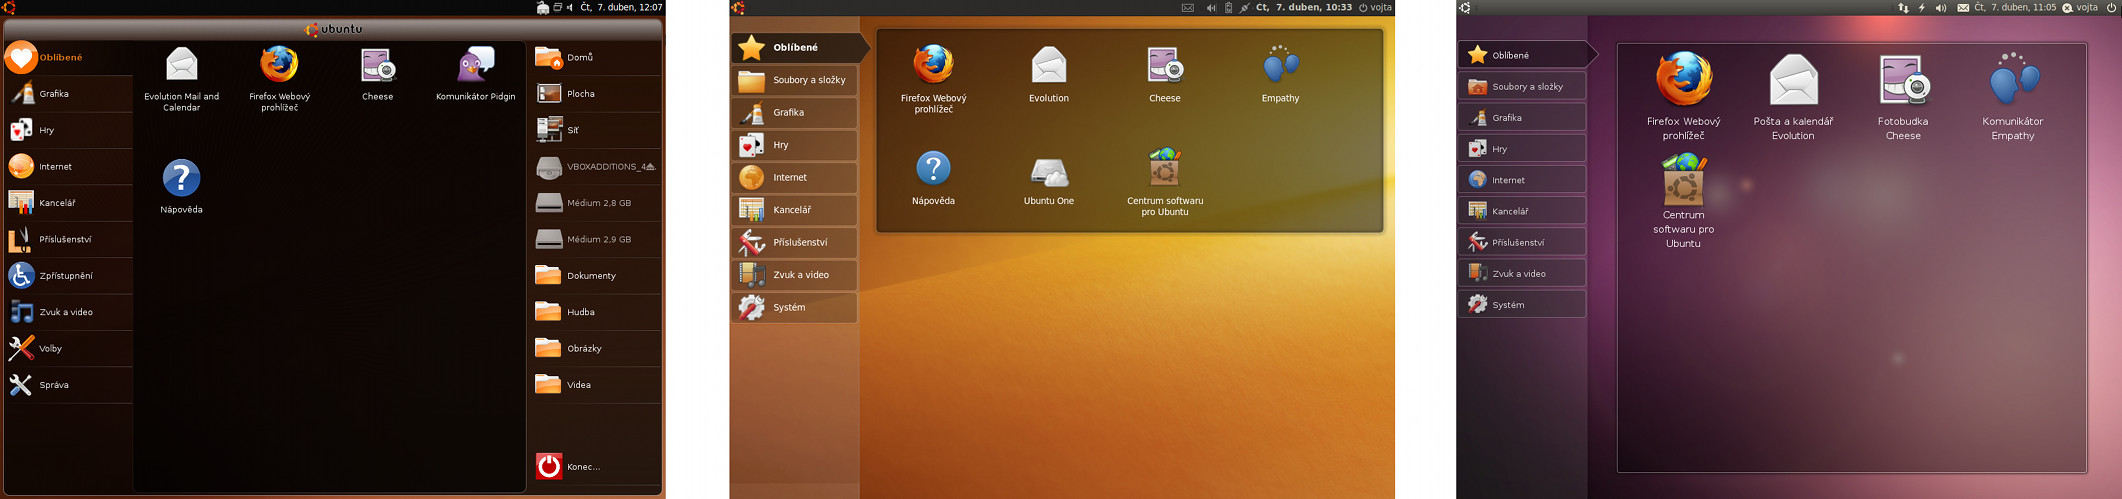 Jak jde čas s Ubuntu pro netbooky – od Jaunty po Lucid